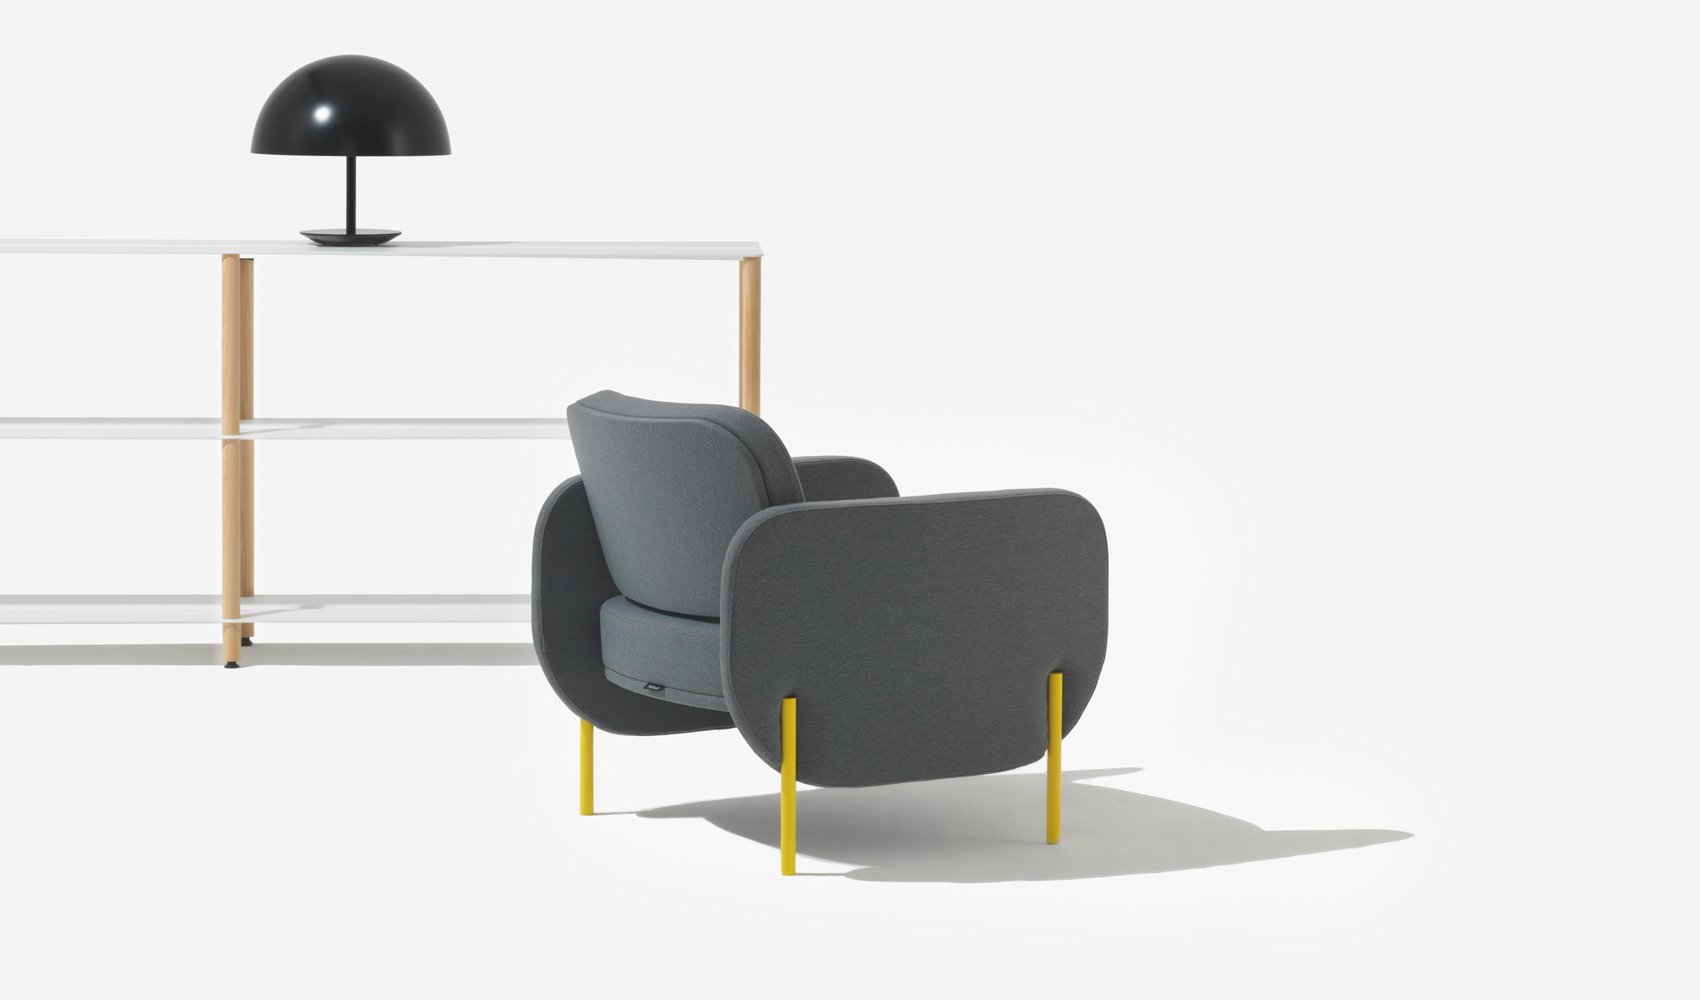 Chair Creative Nz - Office Furniture To Transform Your Workspace Bfg Nz